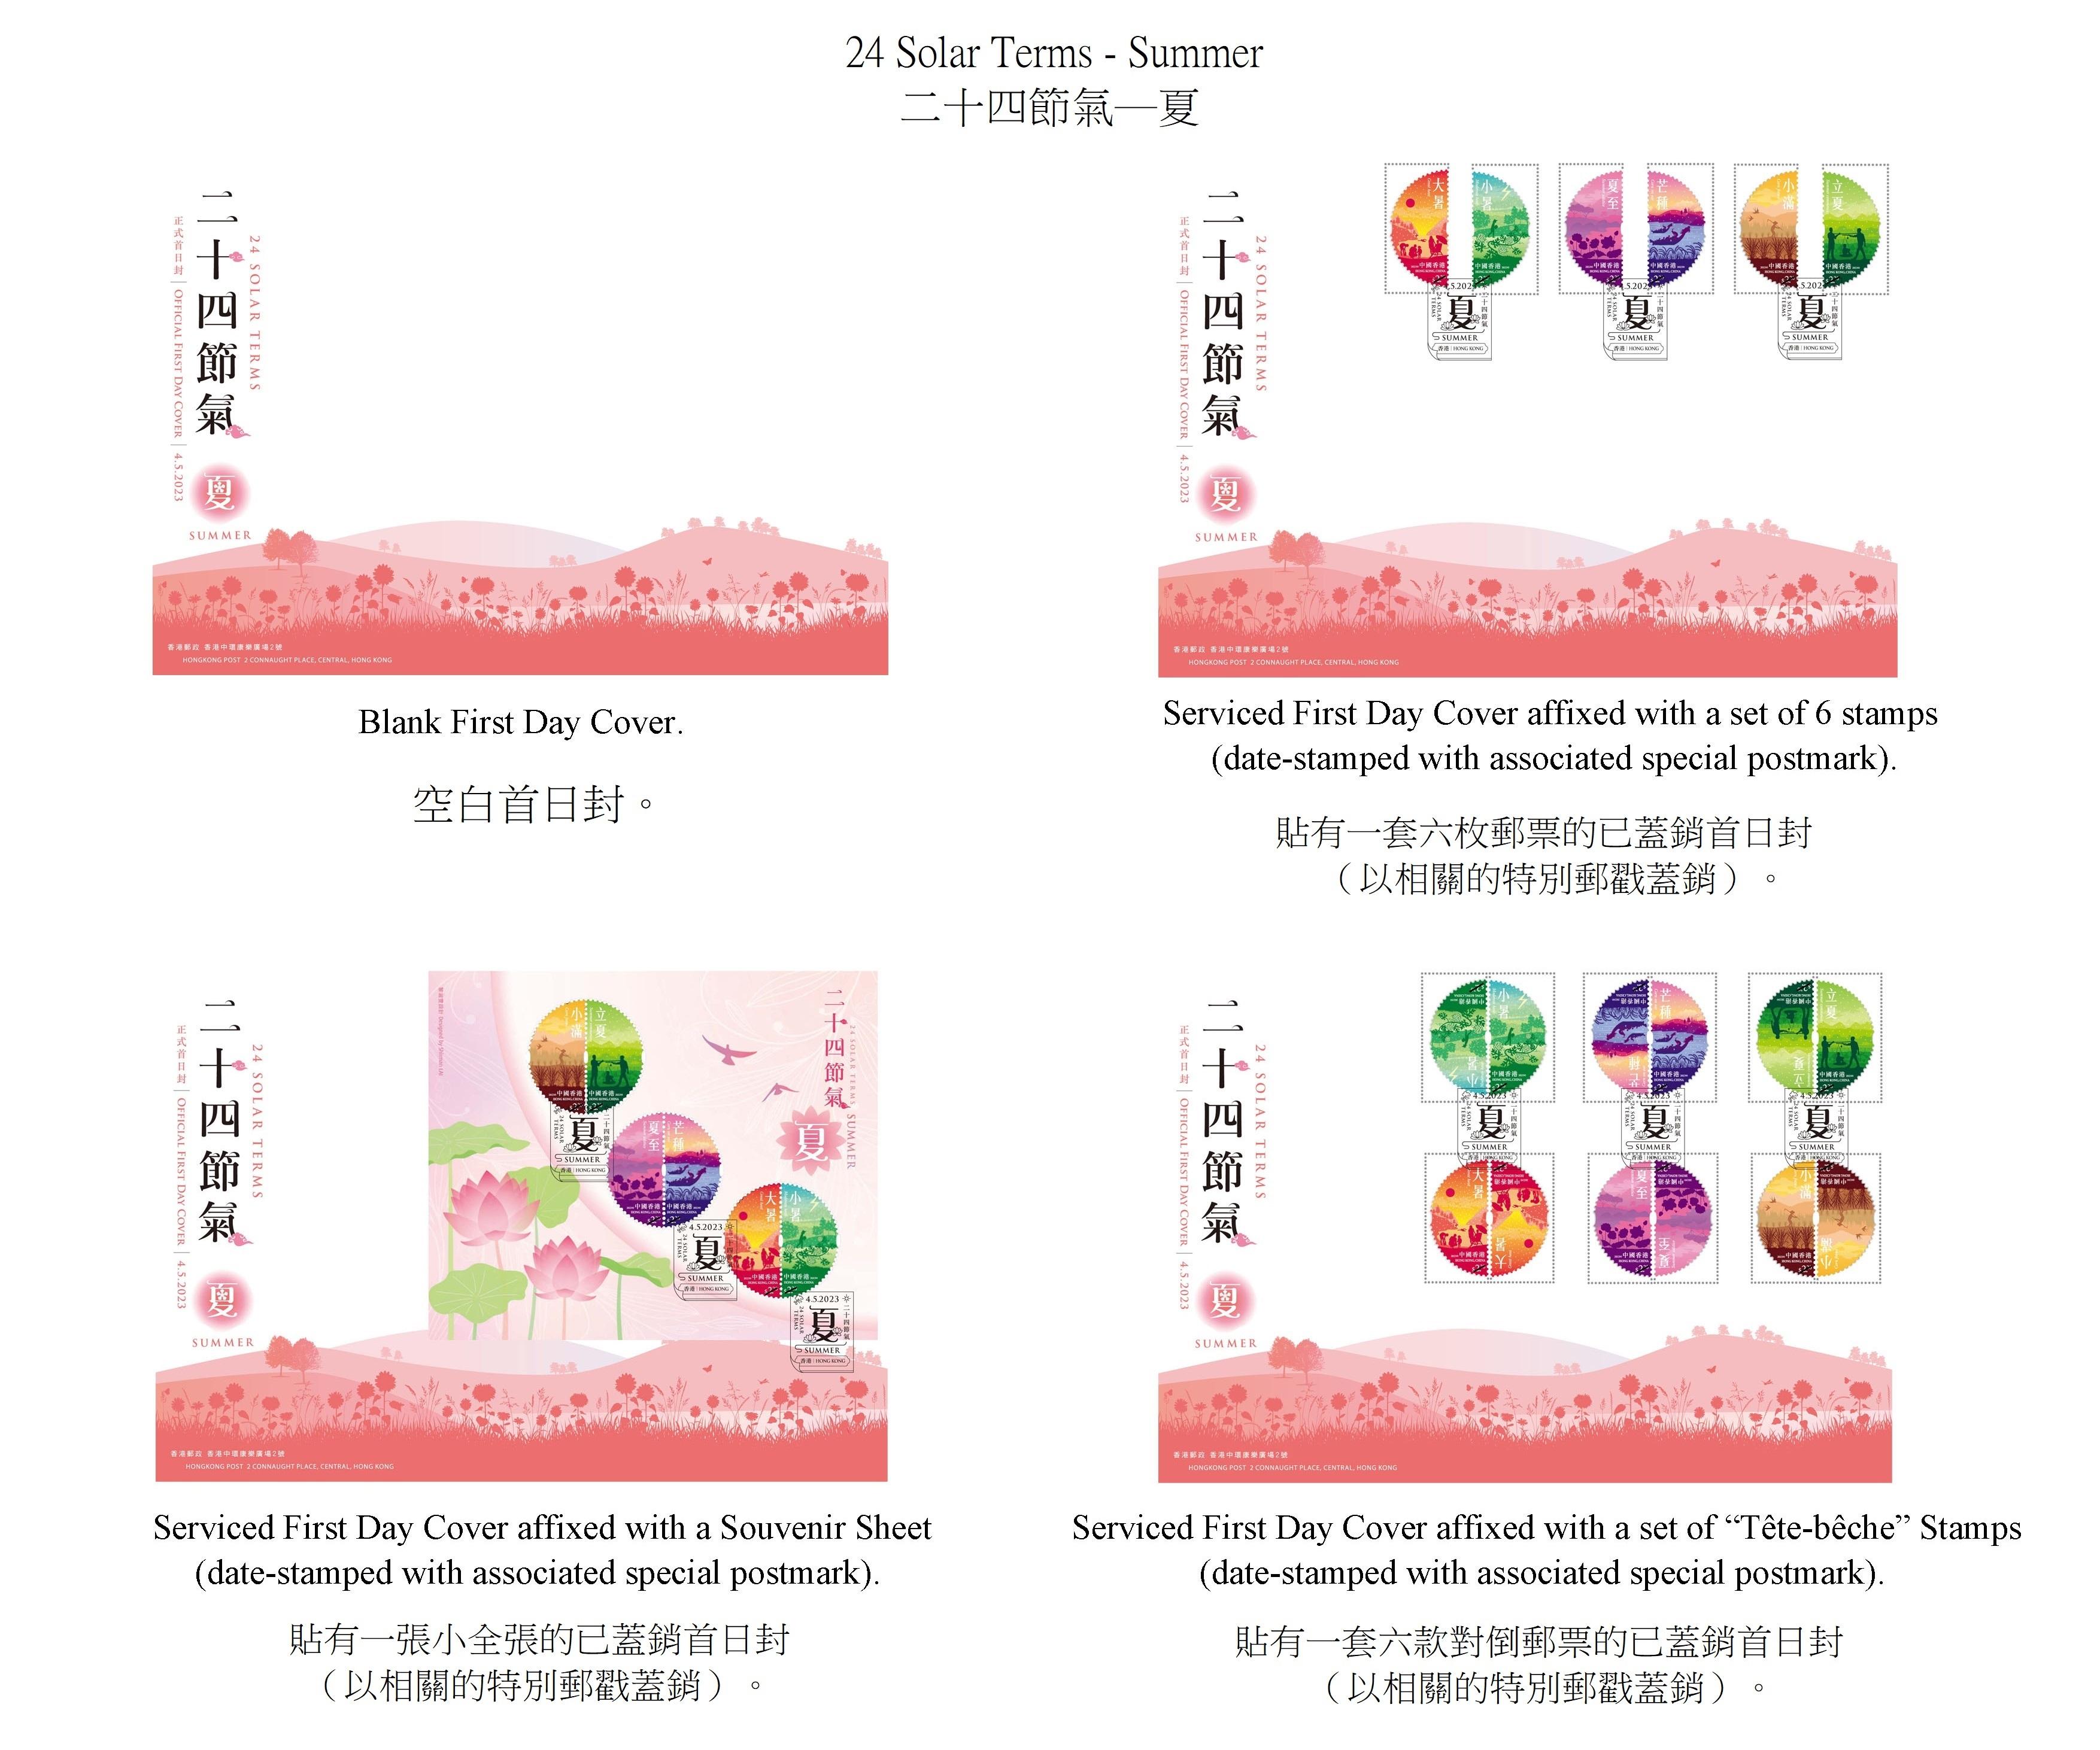 香港郵政五月四日（星期四）發行以「二十四節氣──夏」為題的特別郵票及相關集郵品。圖示首日封。